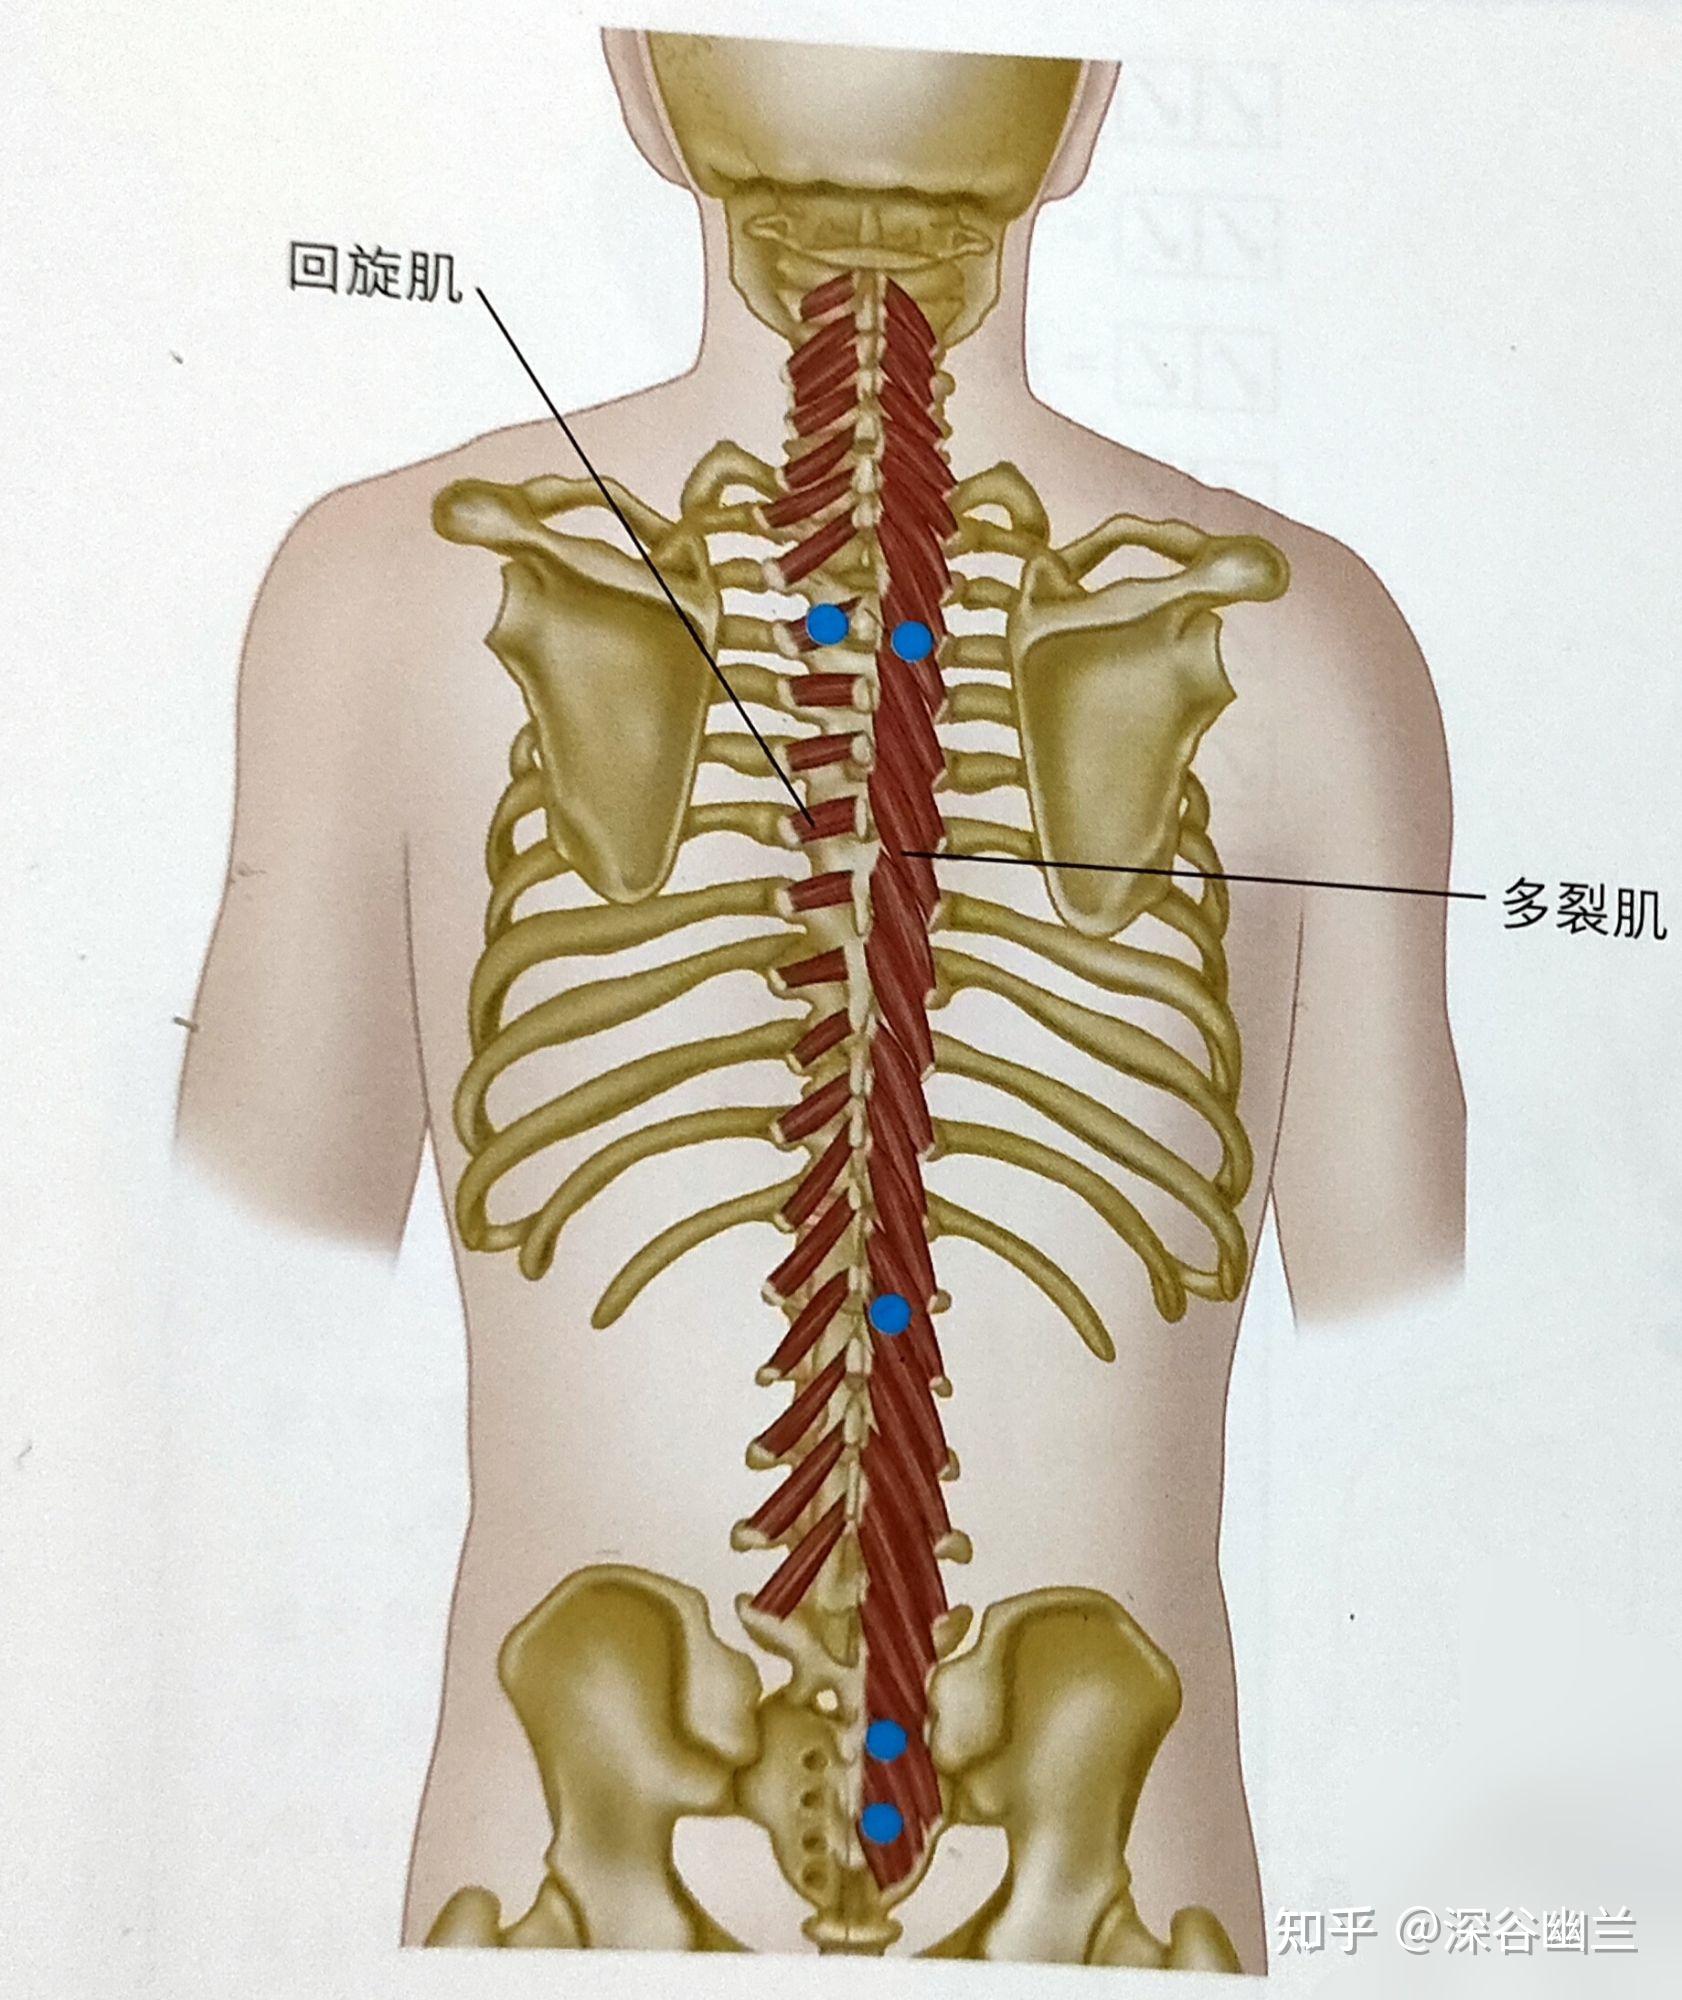 多裂肌起于骶前孔和髂后上棘之间,骶骨后表面